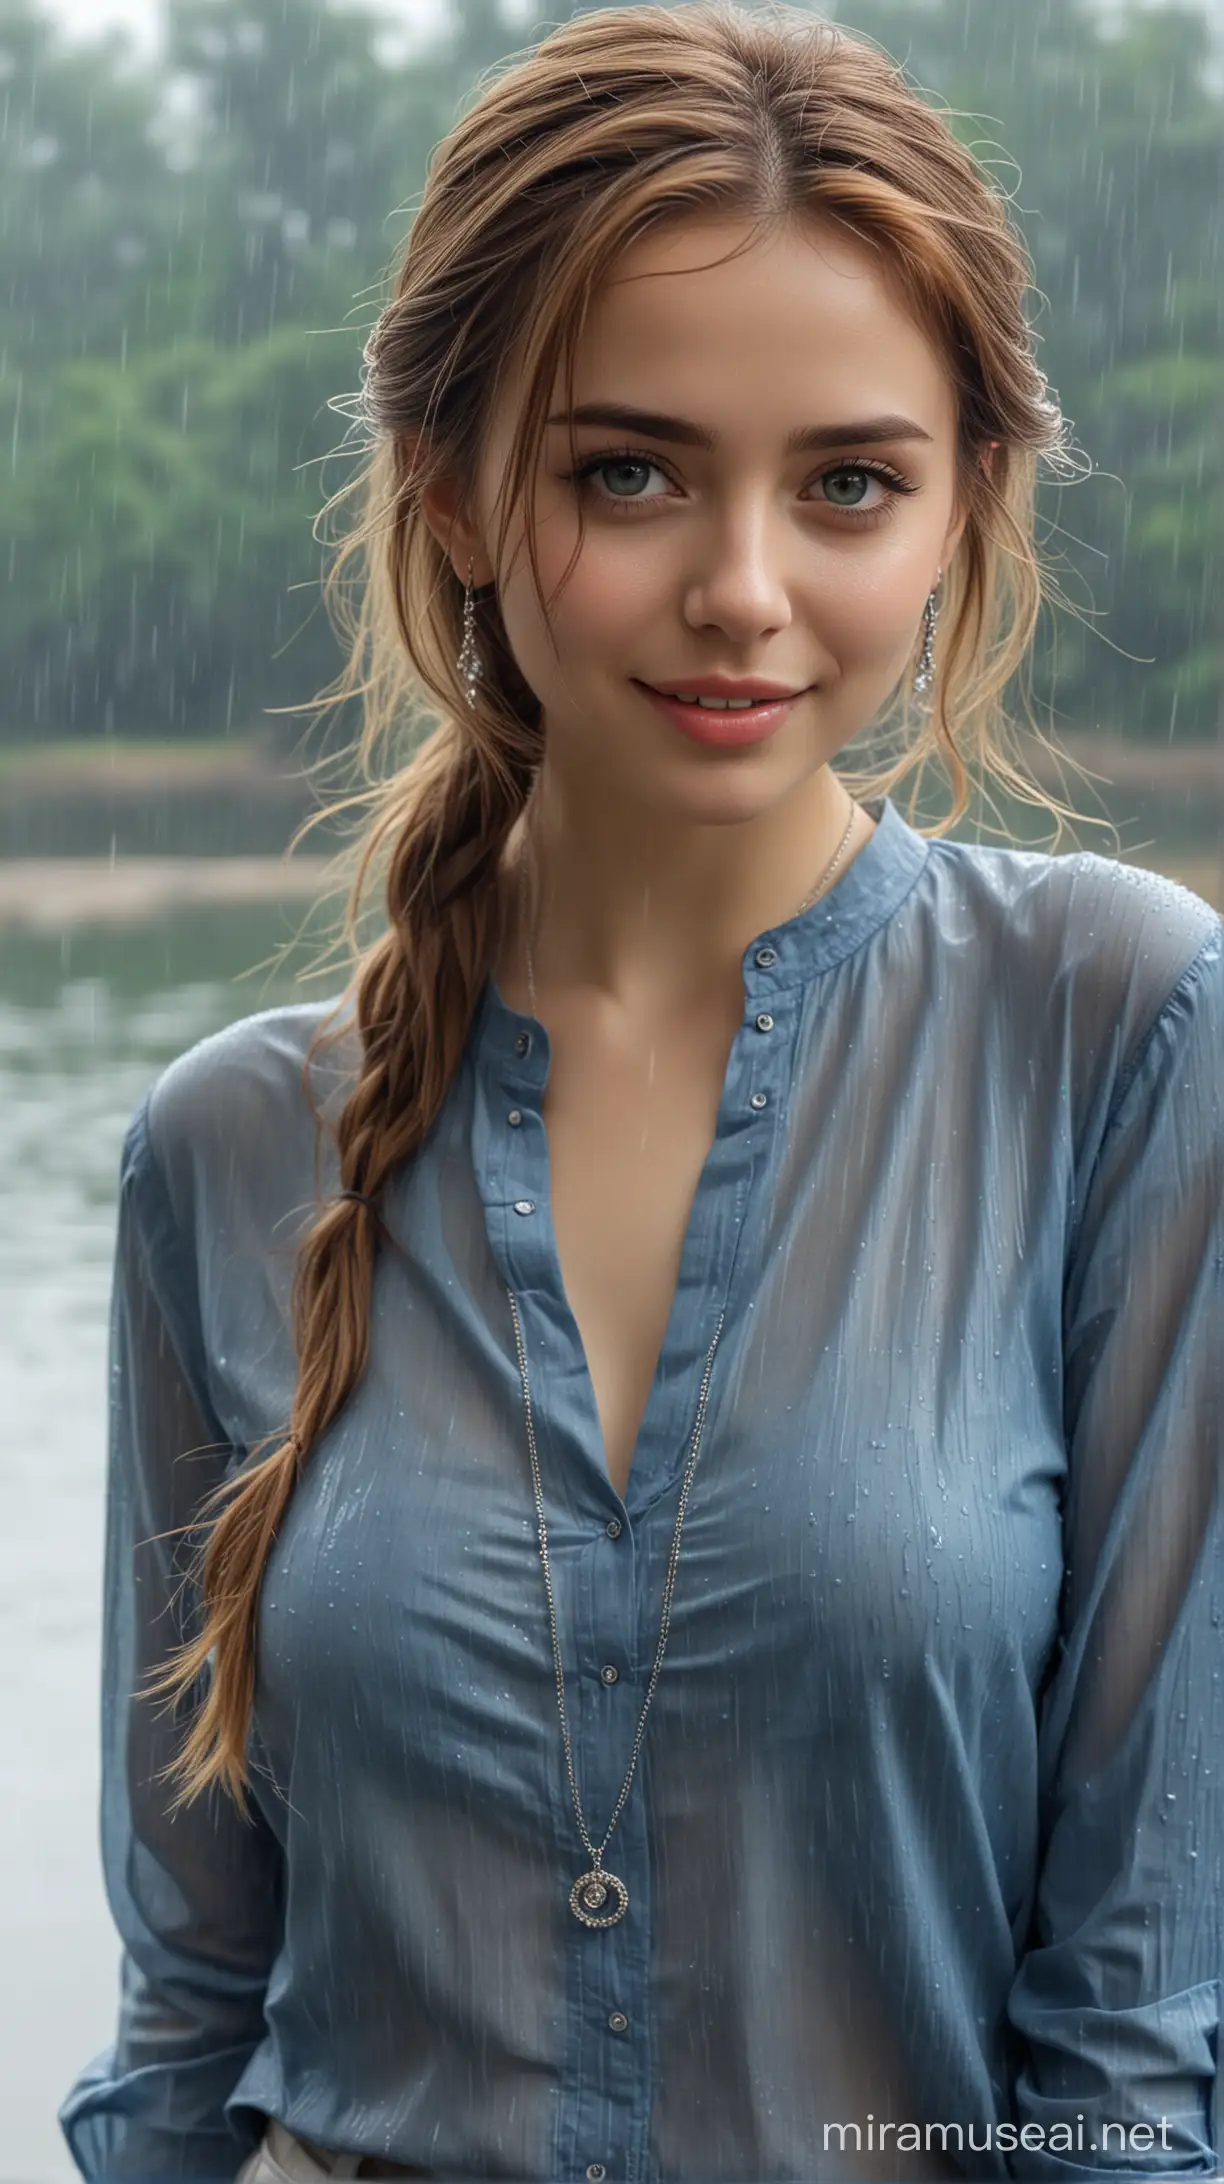 Beautiful Woman Enjoying Rainy Serenity by the Lake